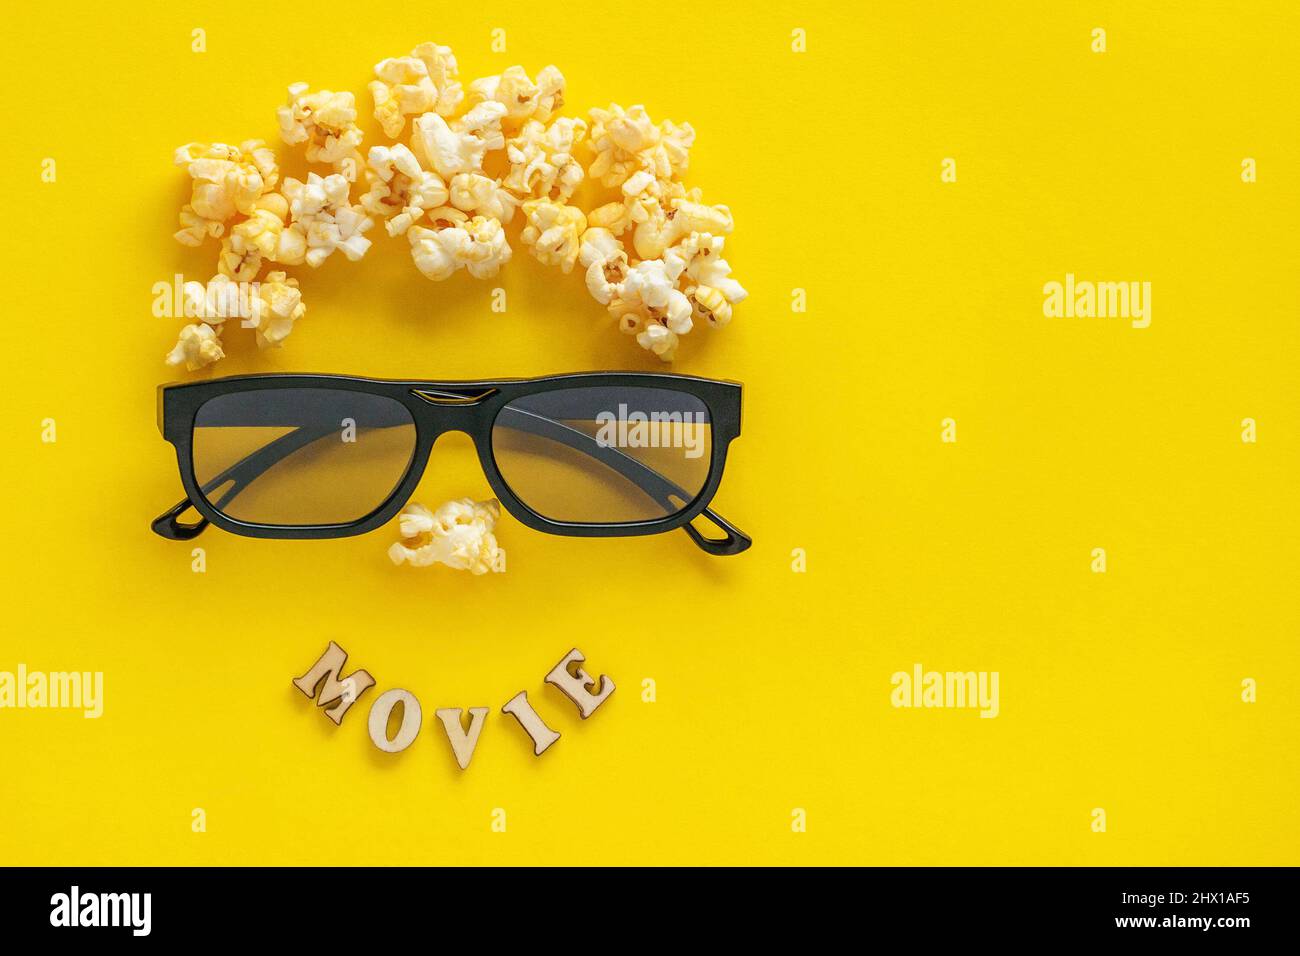 Image abstraite du spectateur, 3D verres et pop-corn, film texte sur fond jaune. Vie fixe, vue de dessus, plat. Concept cinéma et divertissement Banque D'Images